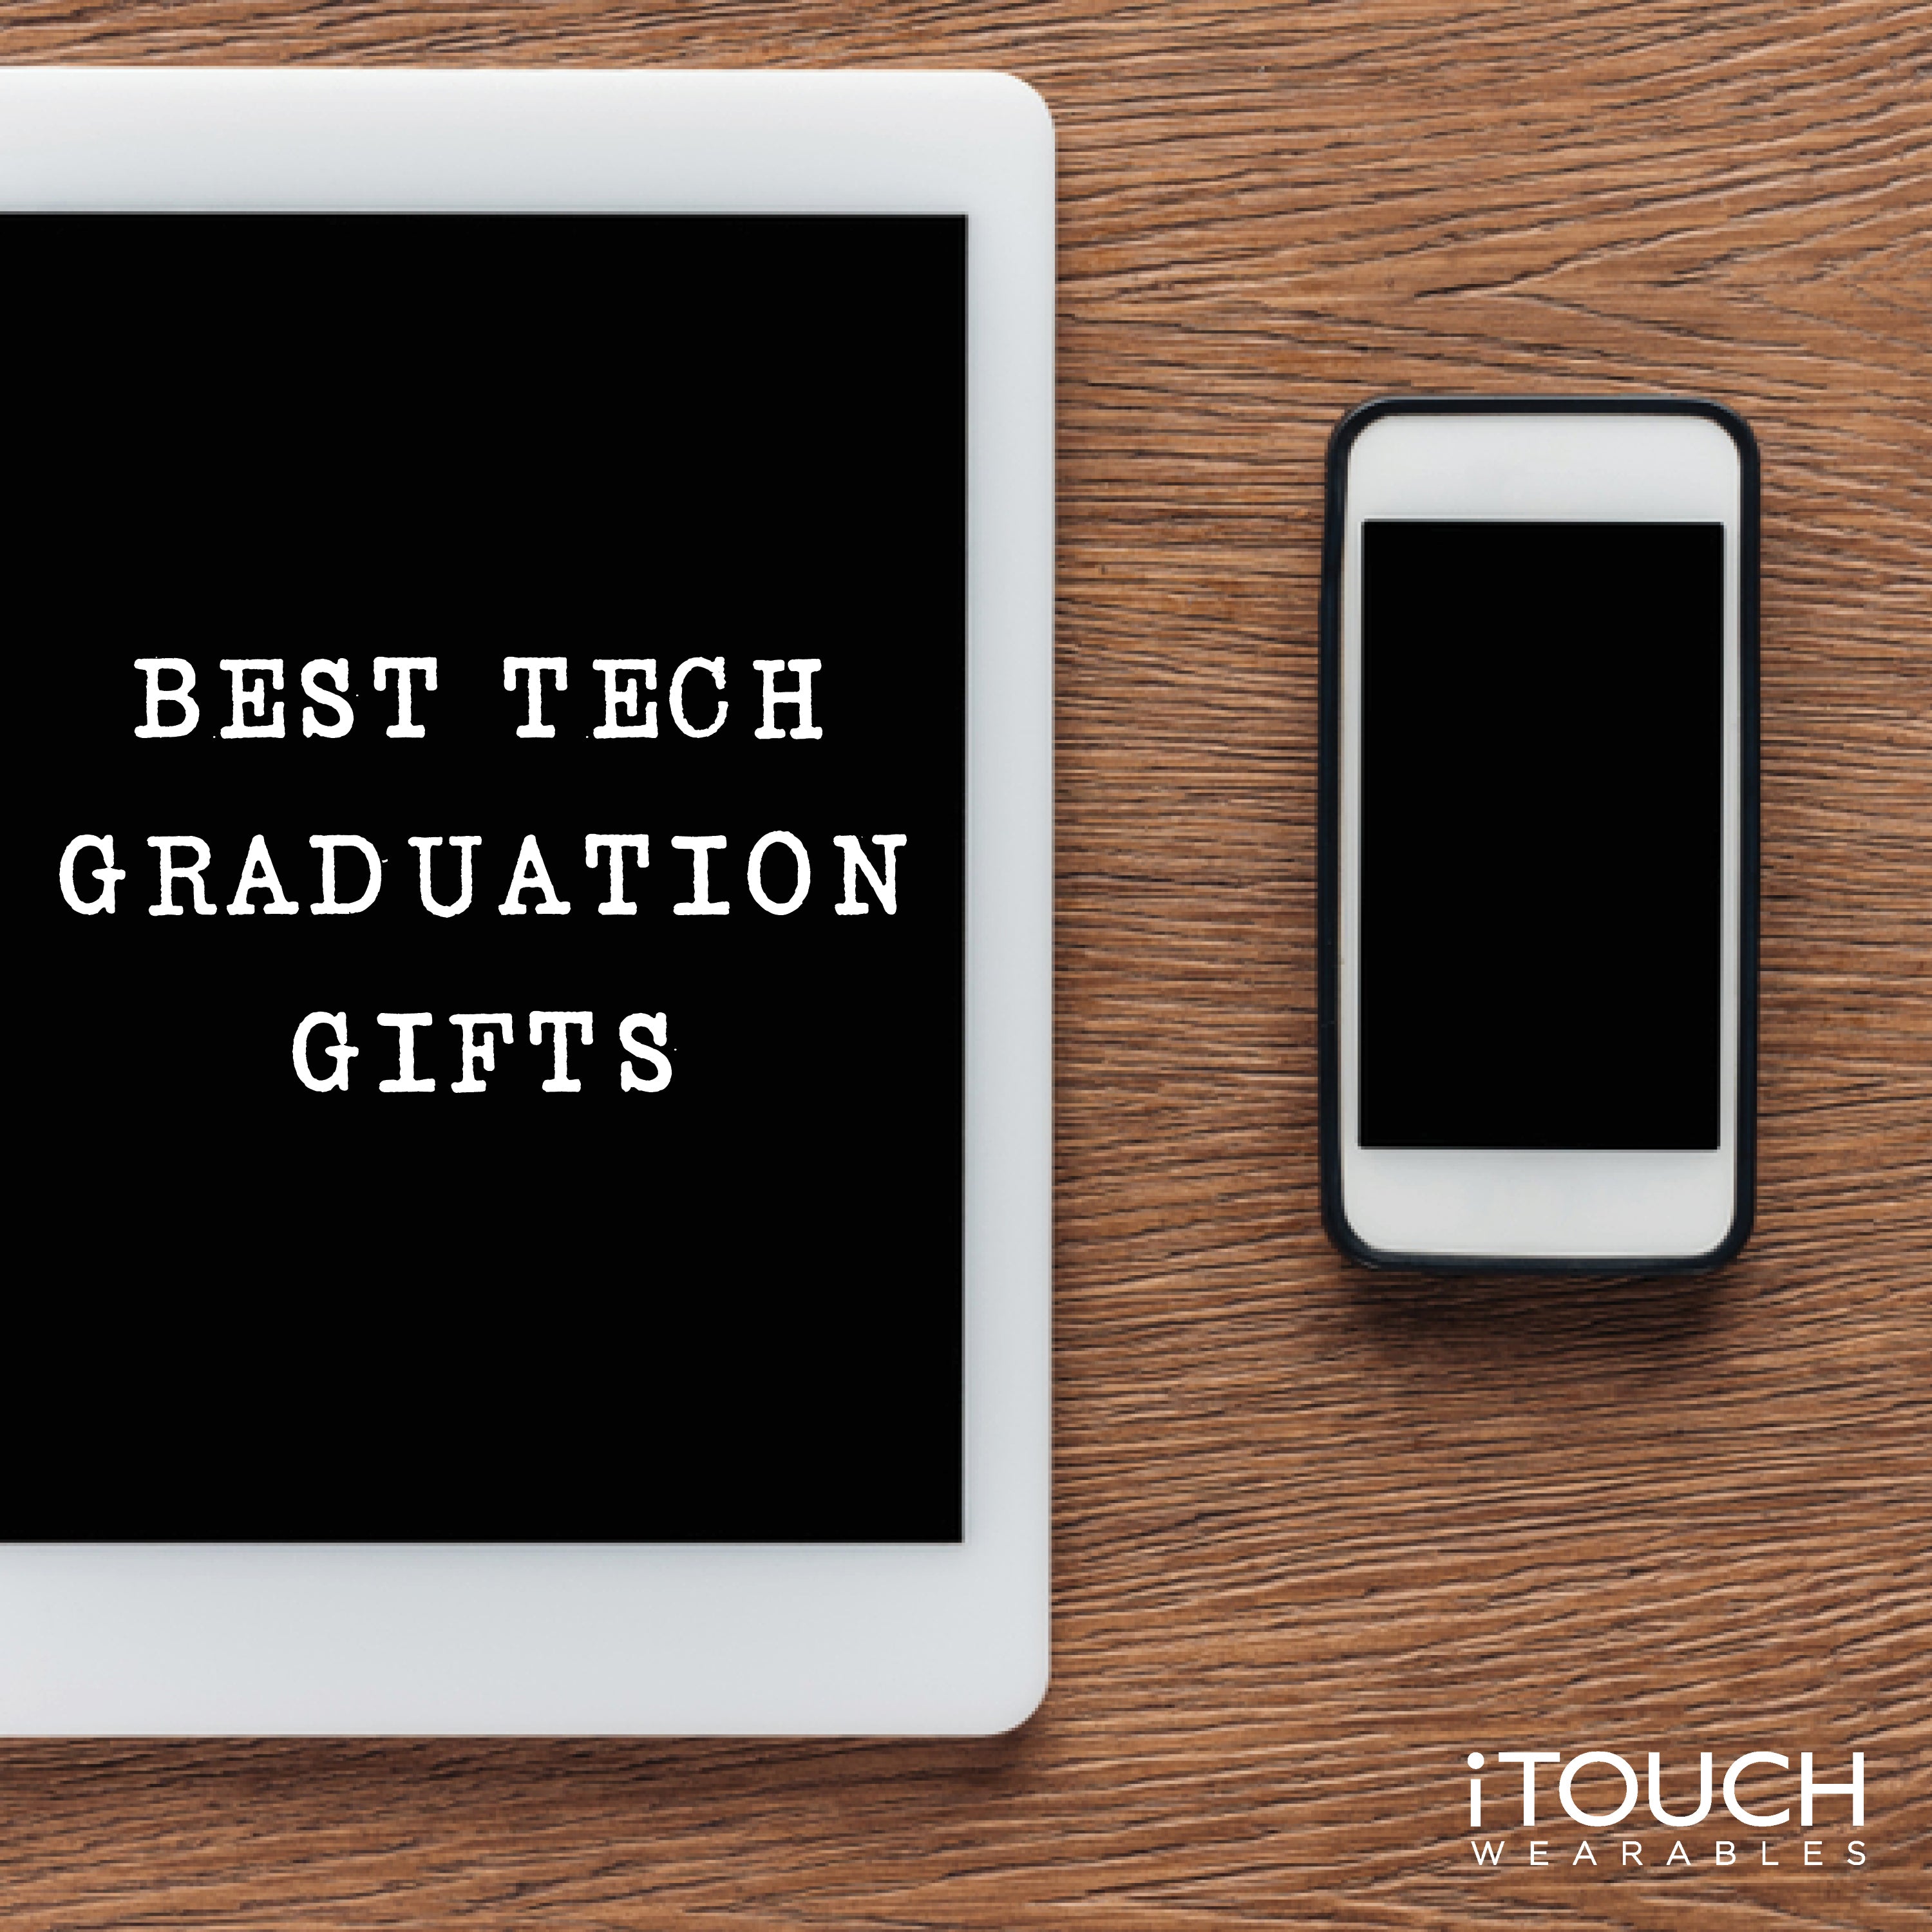 Best Tech Graduation Gifts